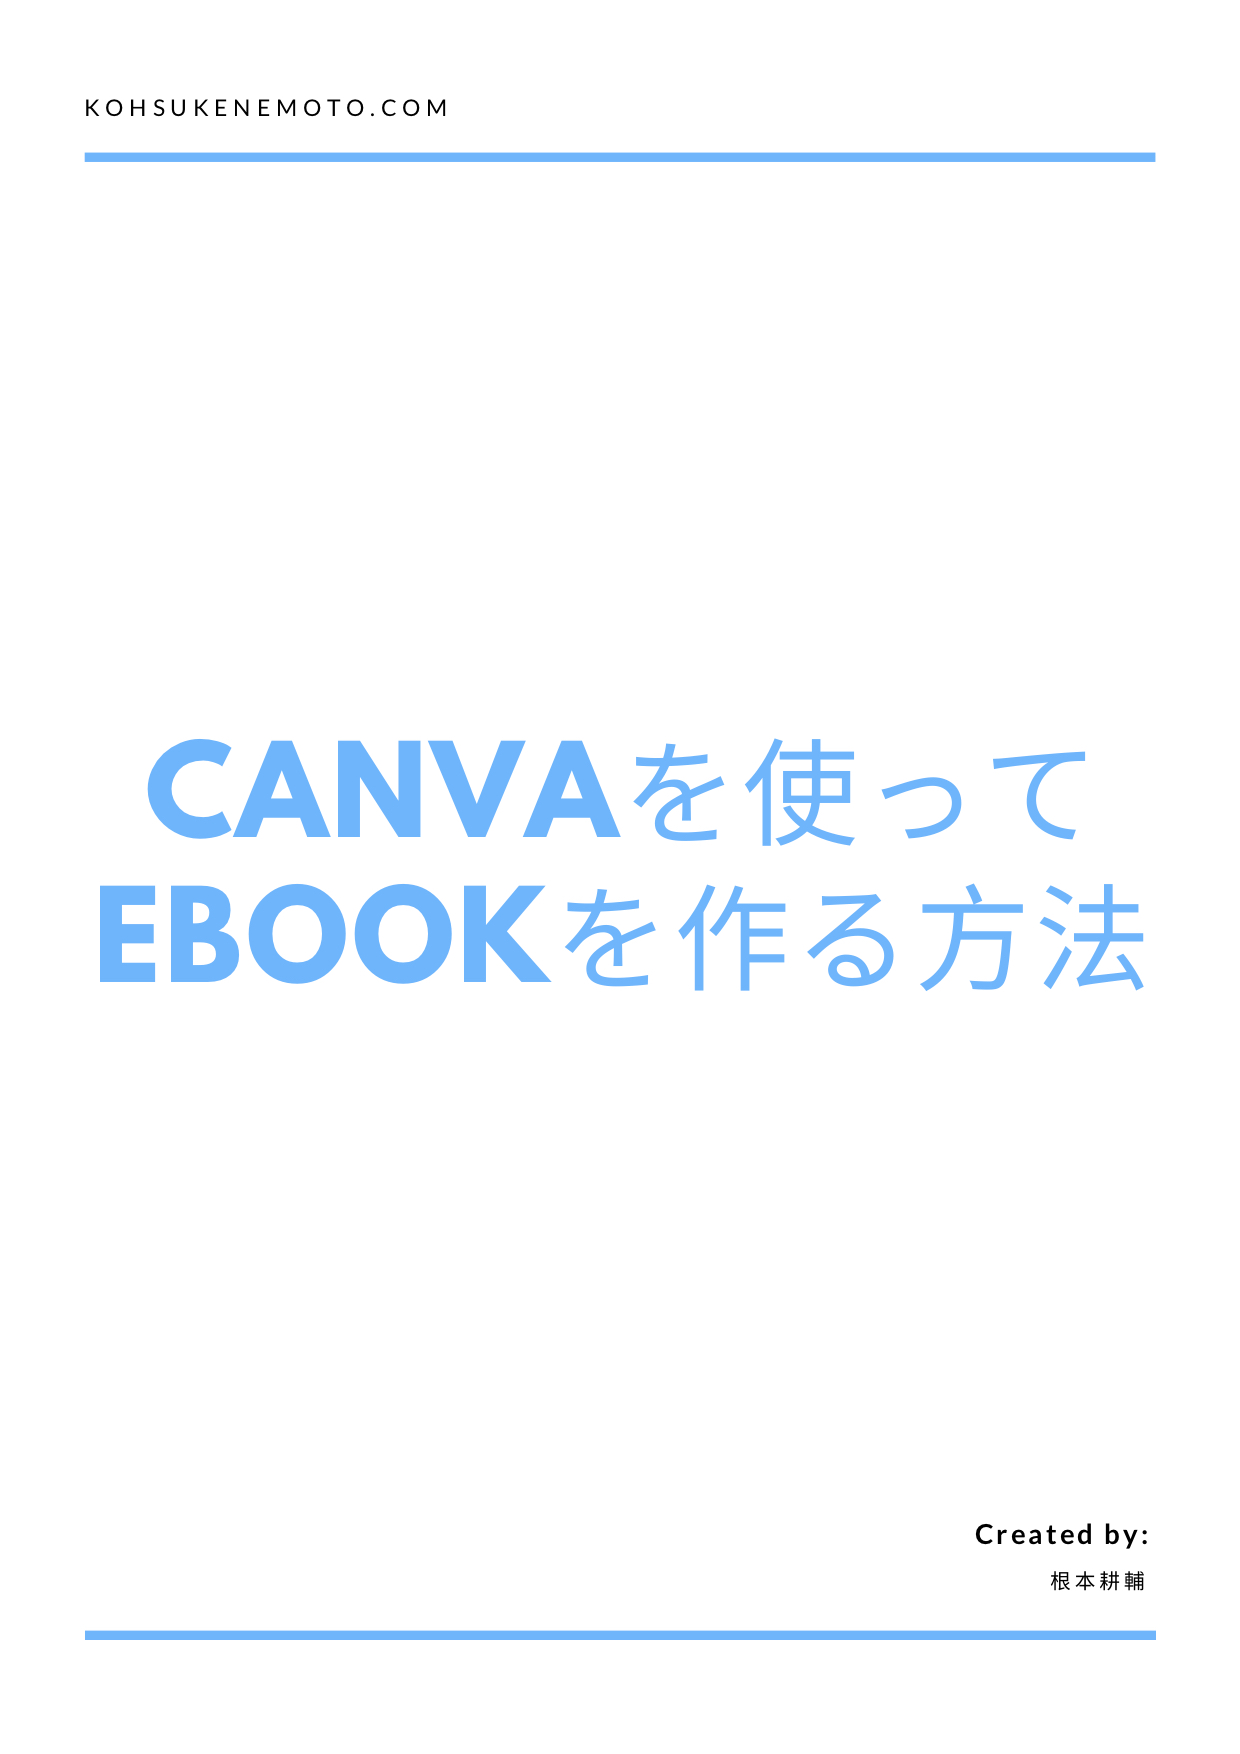 Canvaを使ってeBookを作る方法